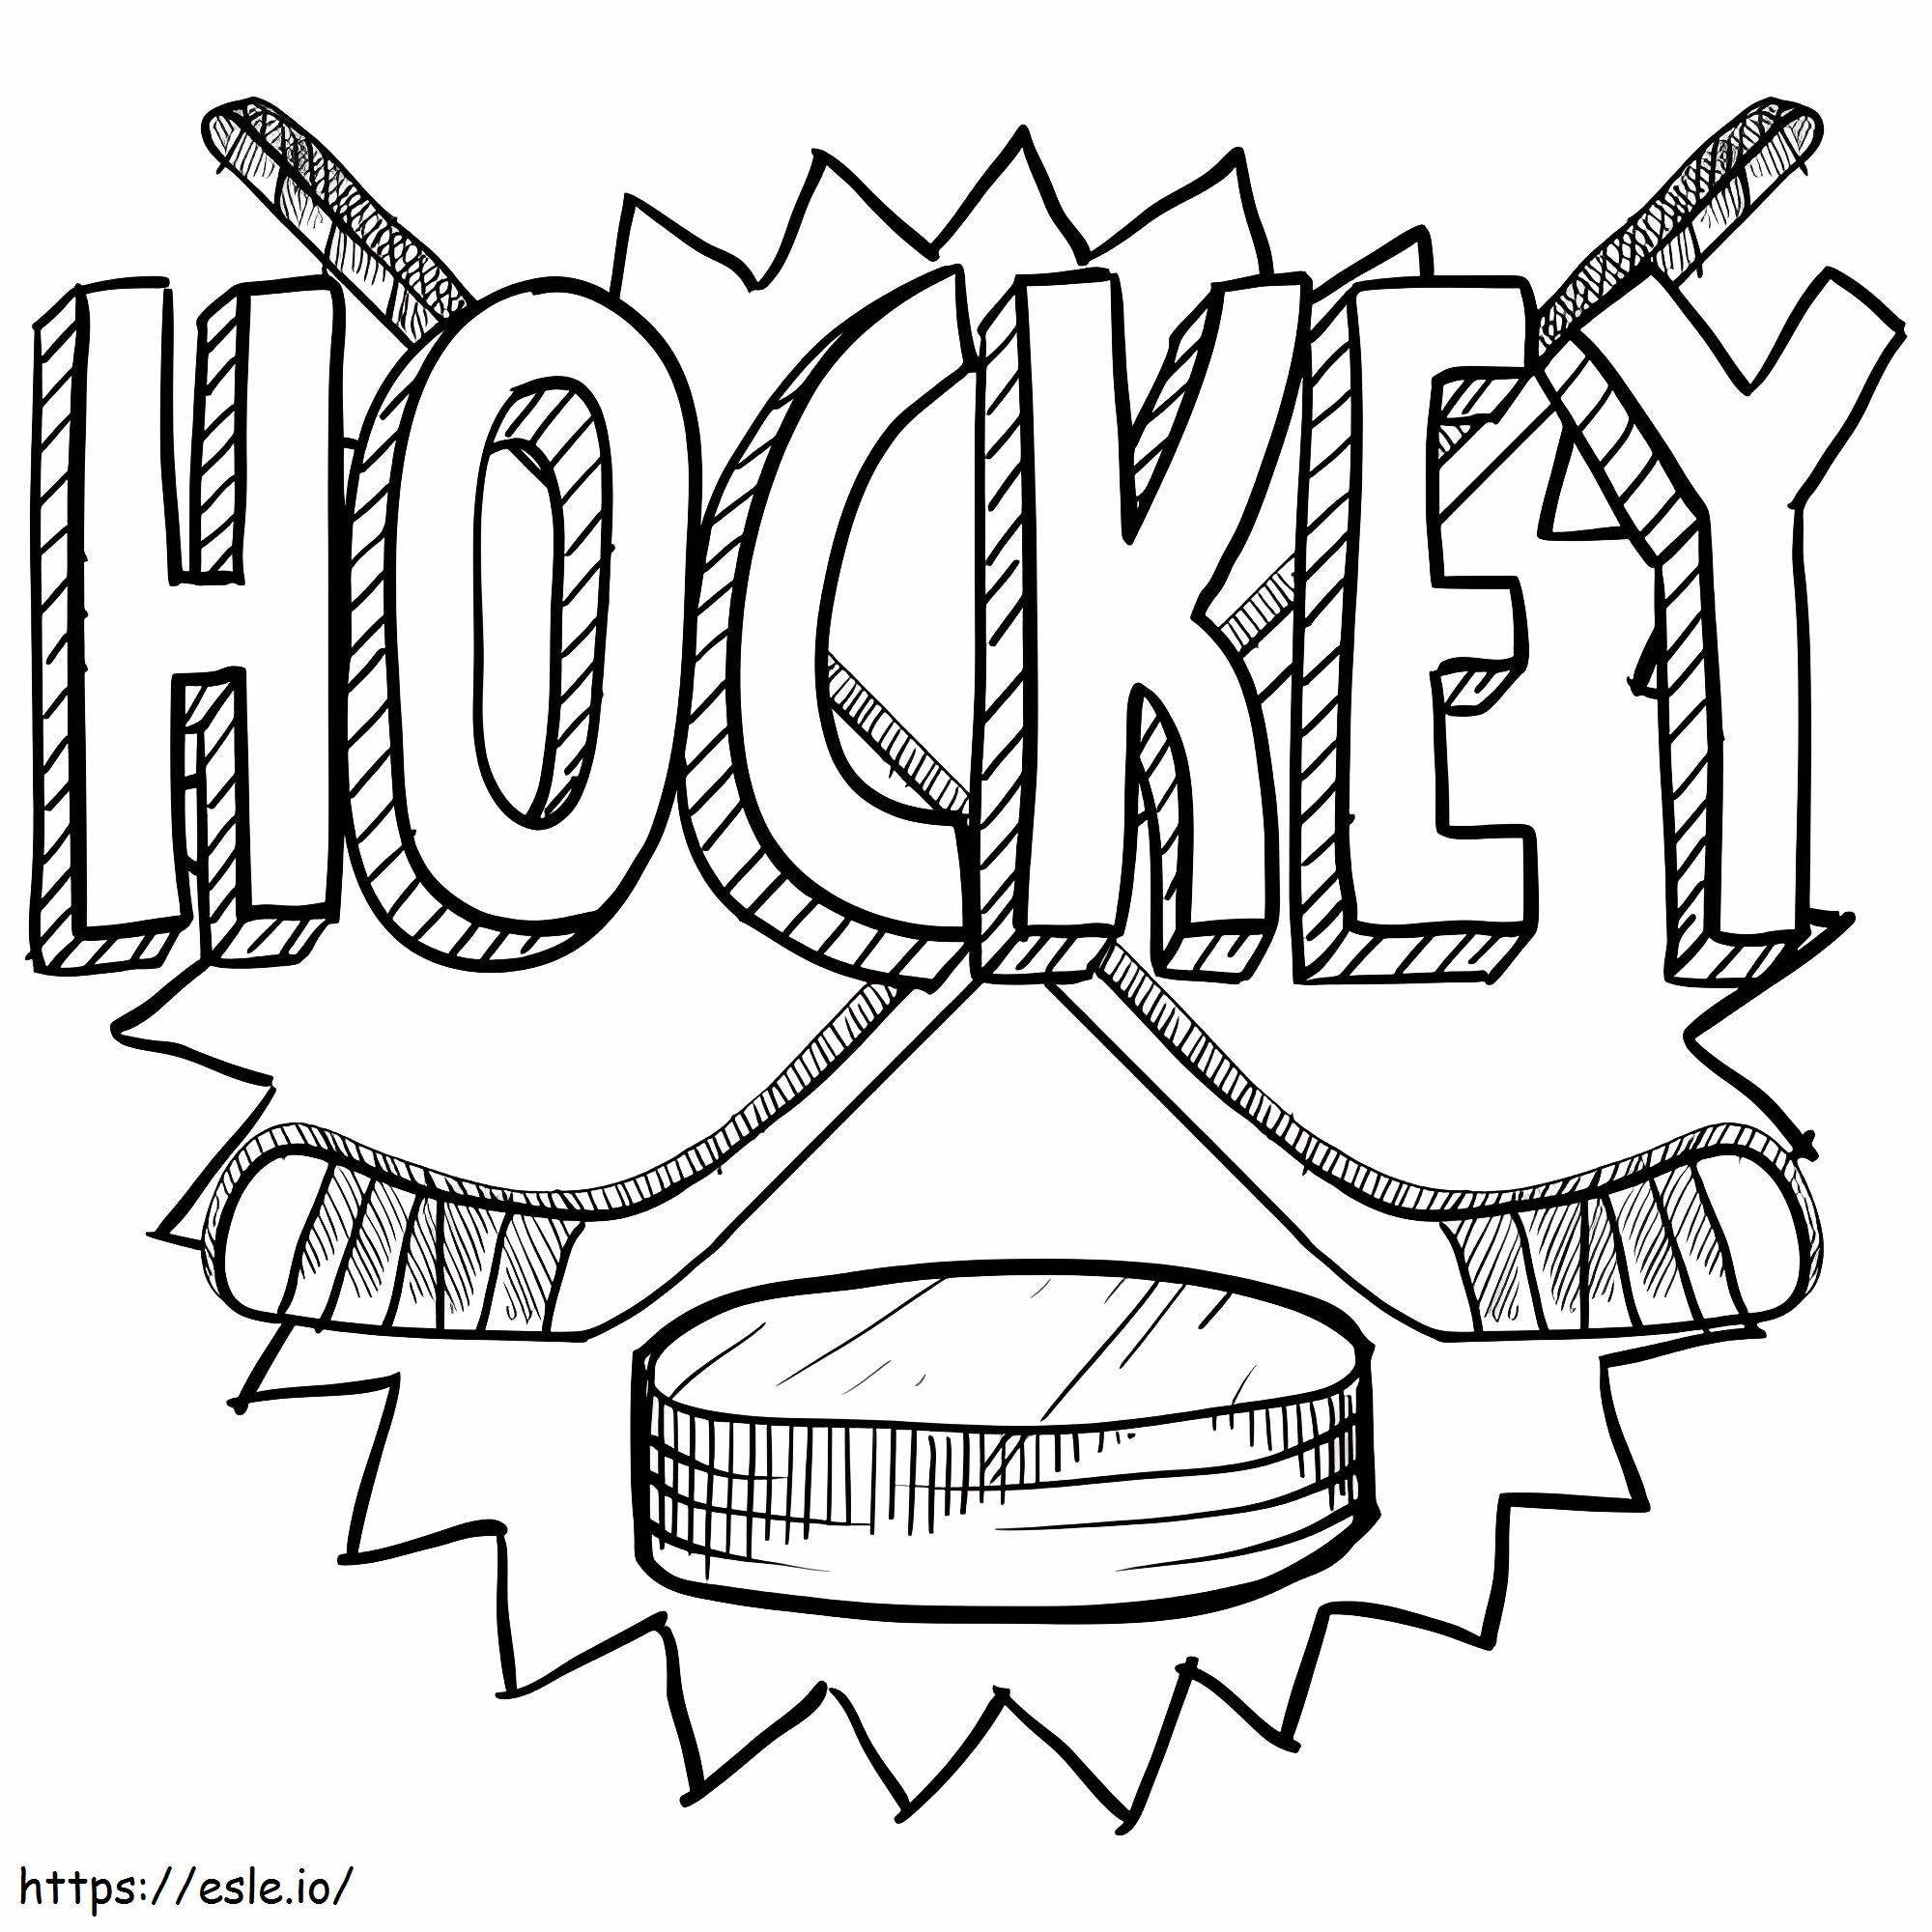 Logo dell'hockey da colorare